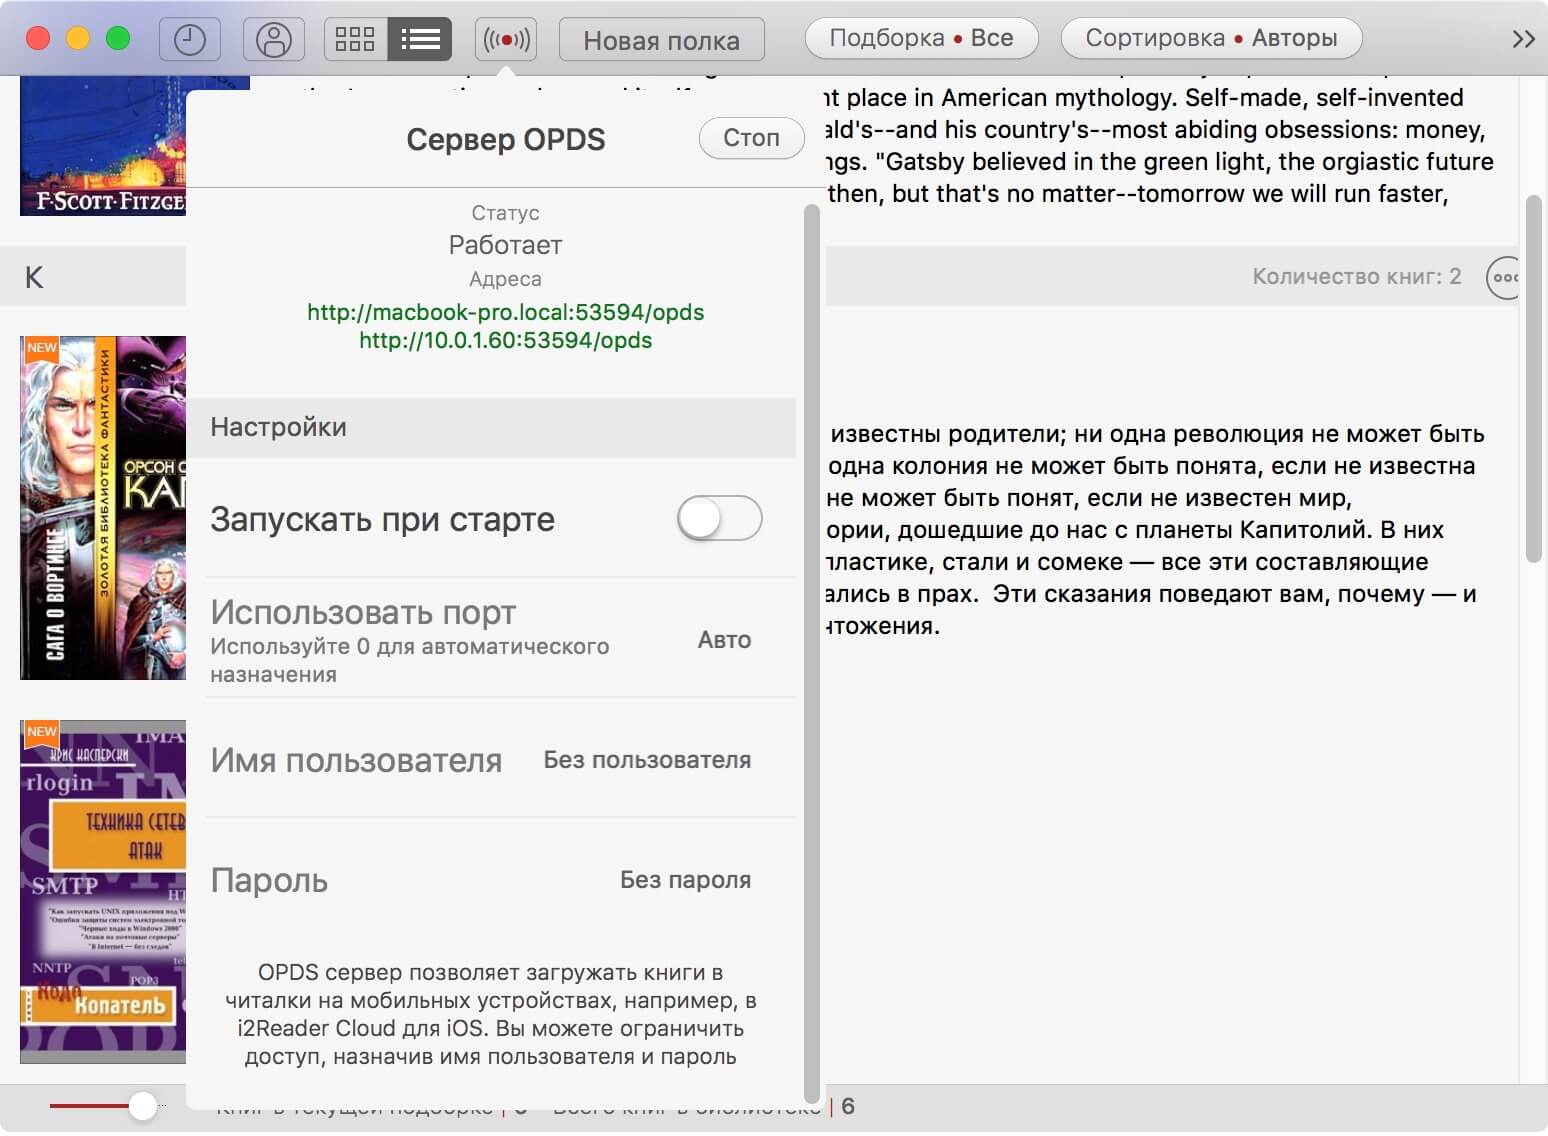 i2 reader cloud for mac